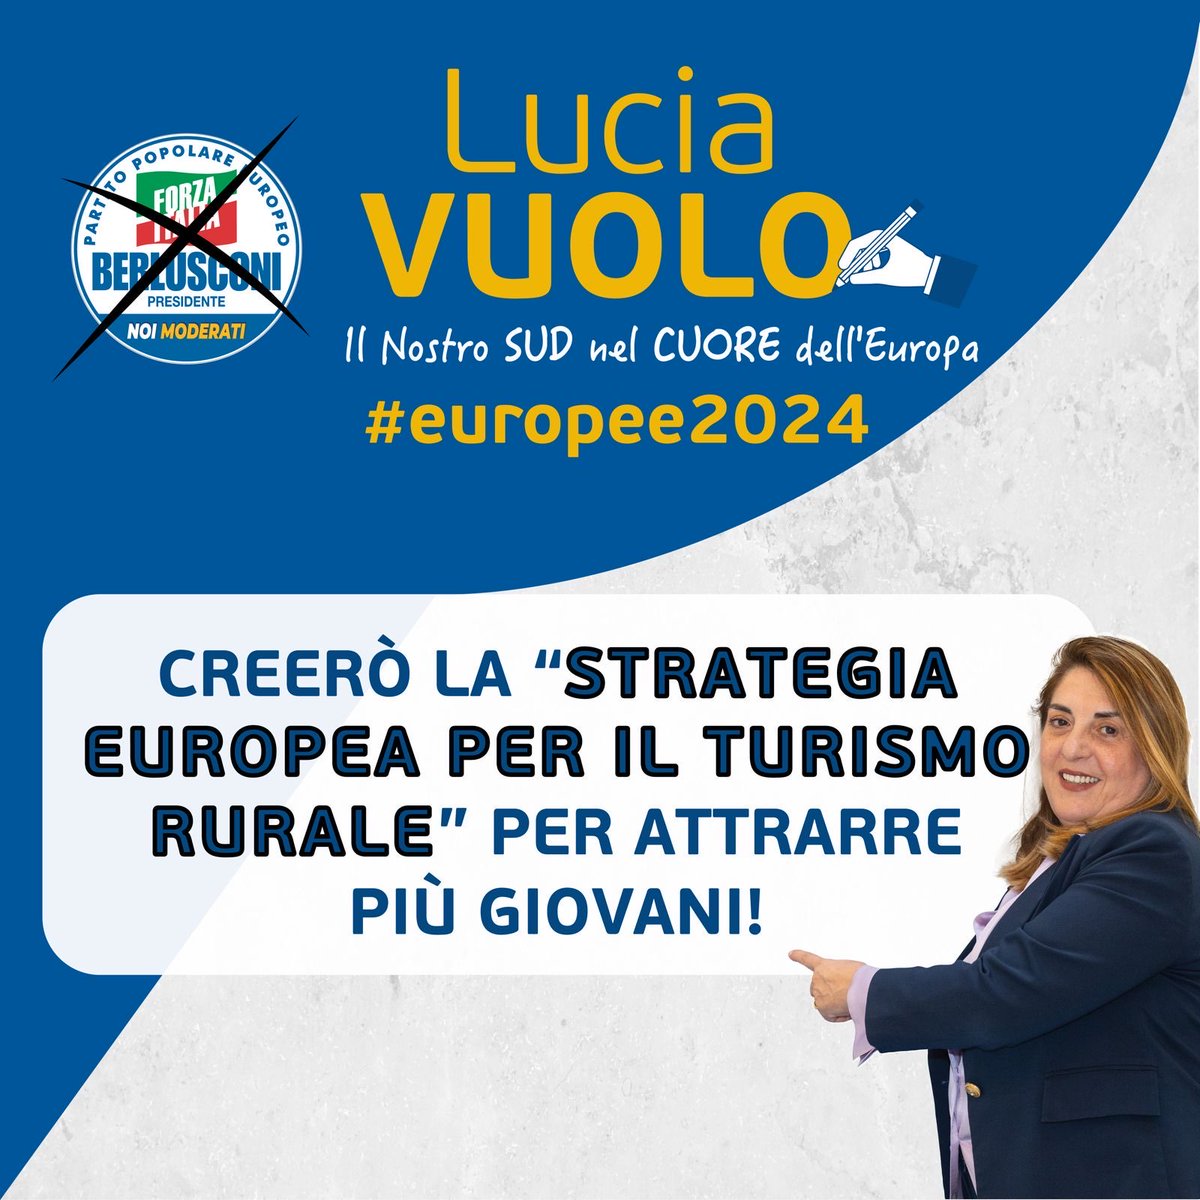 #Turismo: le zone rurali devono diventare attrattive per i #giovani! Mi farò portavoce della nuova Strategia europea per il turismo rurale! #VUOLO #scriviVUOLO #votaVUOLO #DonneInEuropa #europee2024 #ilSUDnelCUORE